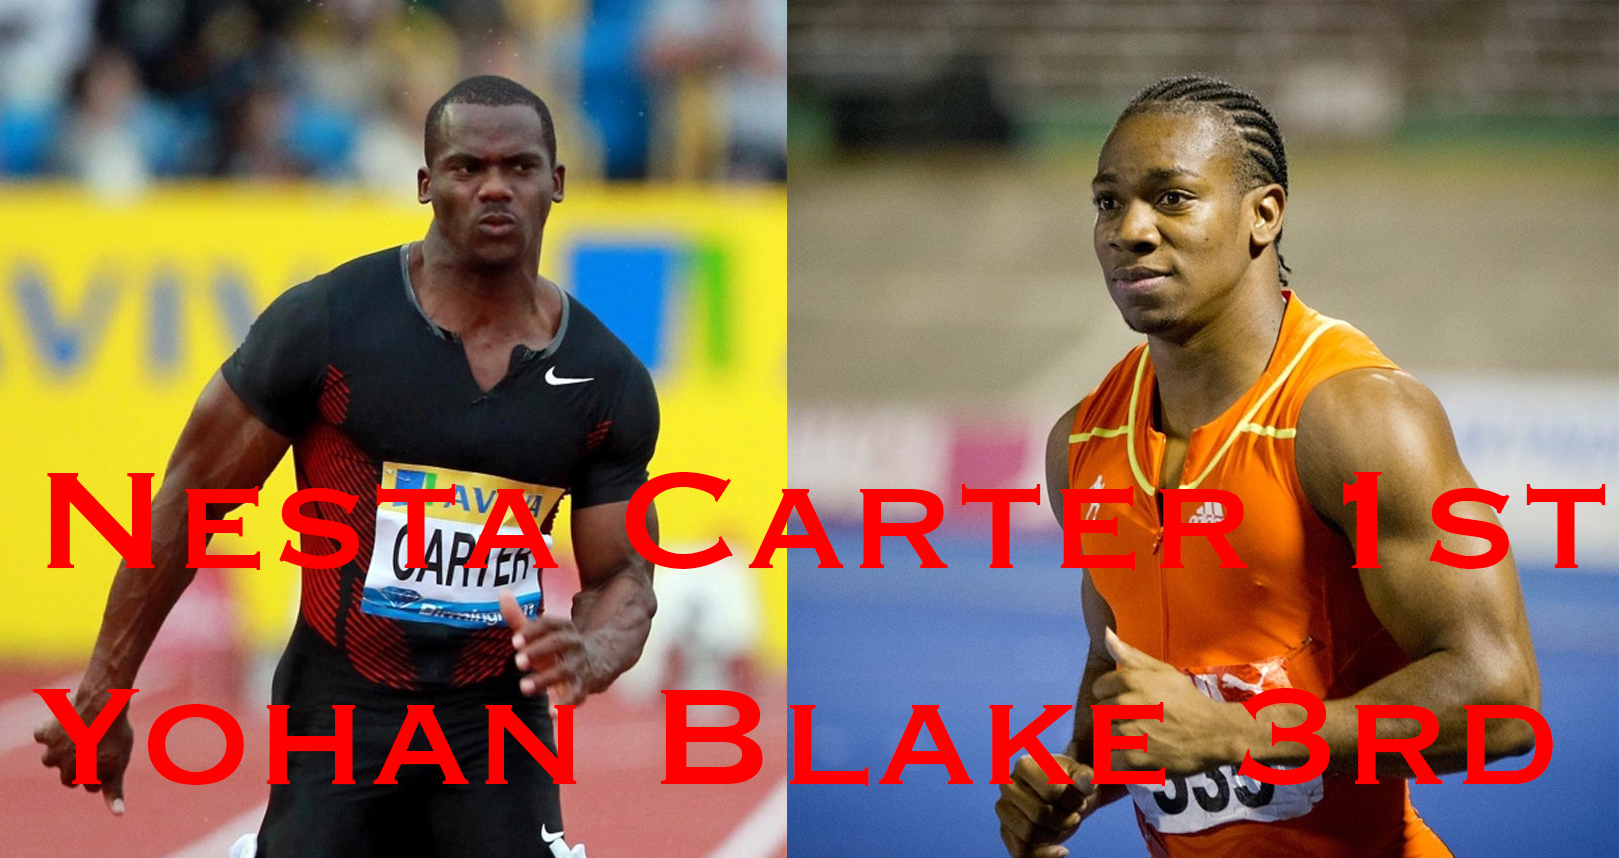 Watch Yohan Blake, Nesta Carter 200m #JAAAQualifyingSeries